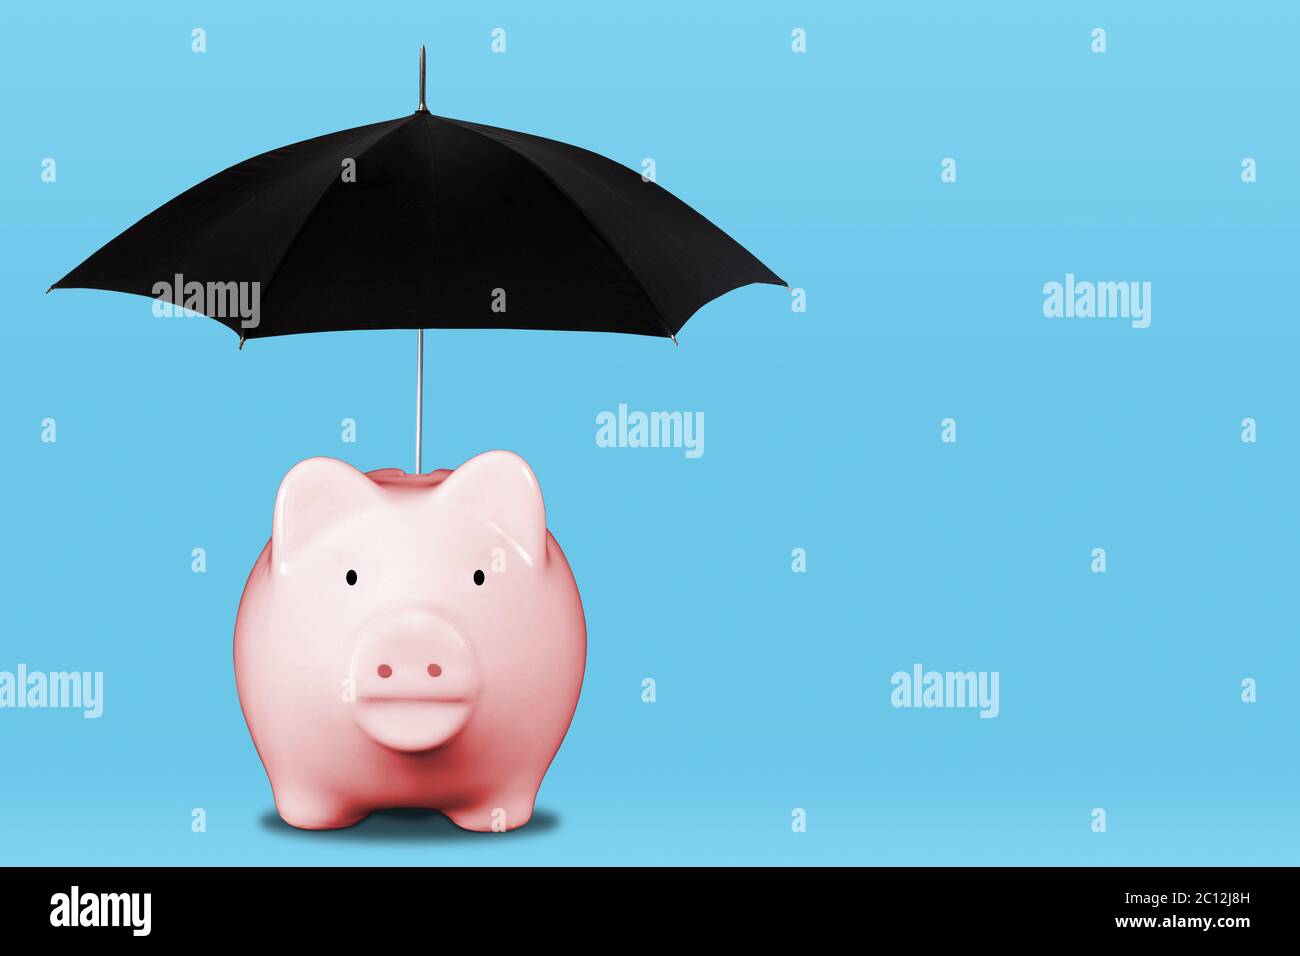 Économisez pour une journée de pluie avec une tirelire rose et un parapluie. Concept de sécurité financière, d'épargne, de couverture d'assurance, de gestion de patrimoine, etc Banque D'Images